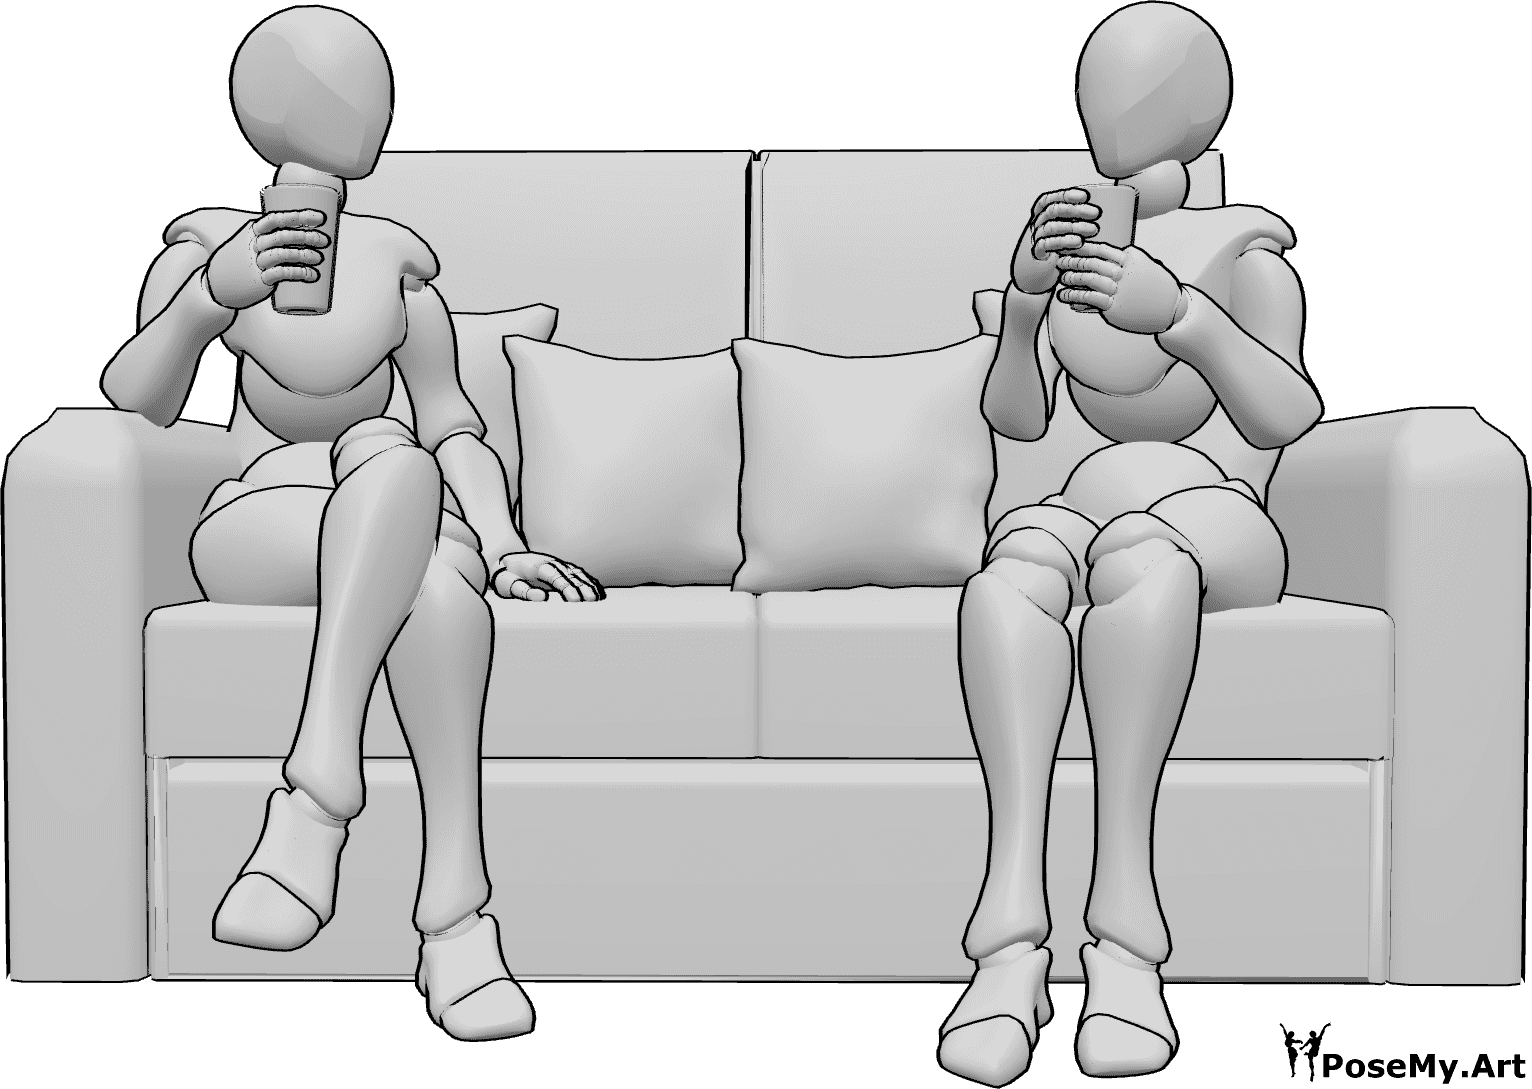 Riferimento alle pose- Due donne che bevono in posa - Due donne, sedute su un divano e con i bicchieri in mano, bevono qualcosa.